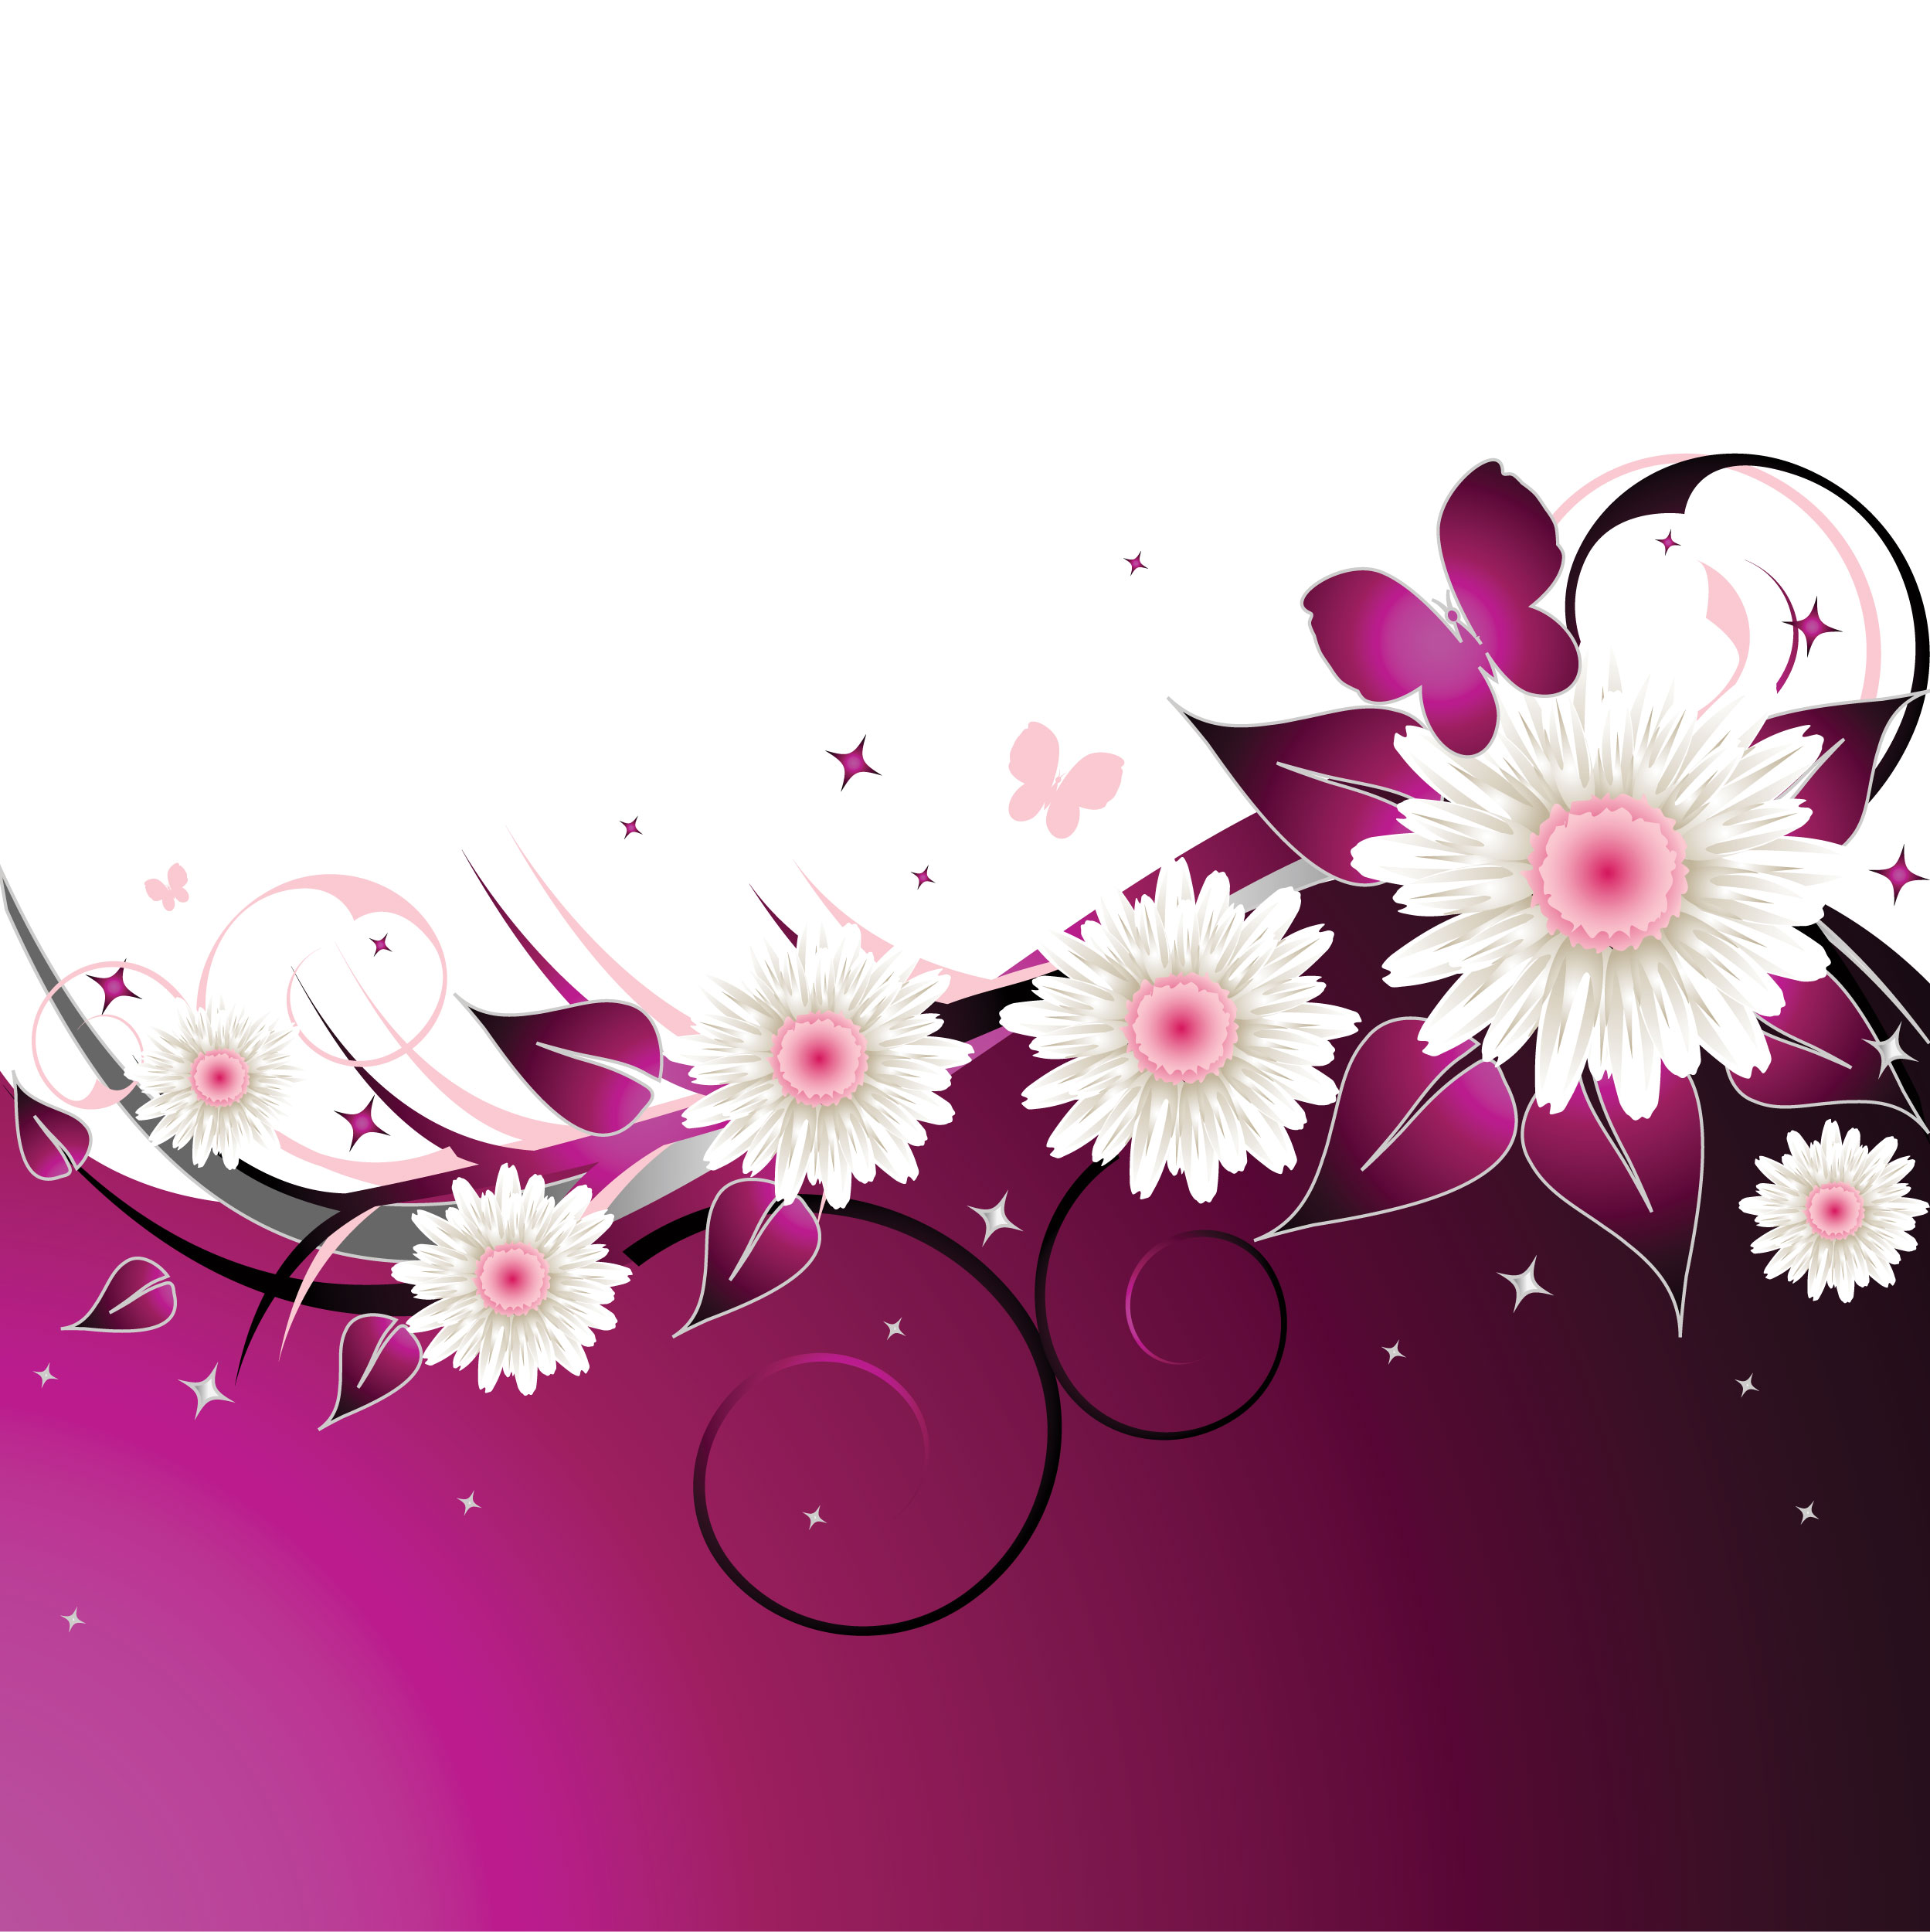 花のイラスト フリー素材 壁紙 背景no 305 赤紫 白い花 蝶 輝き